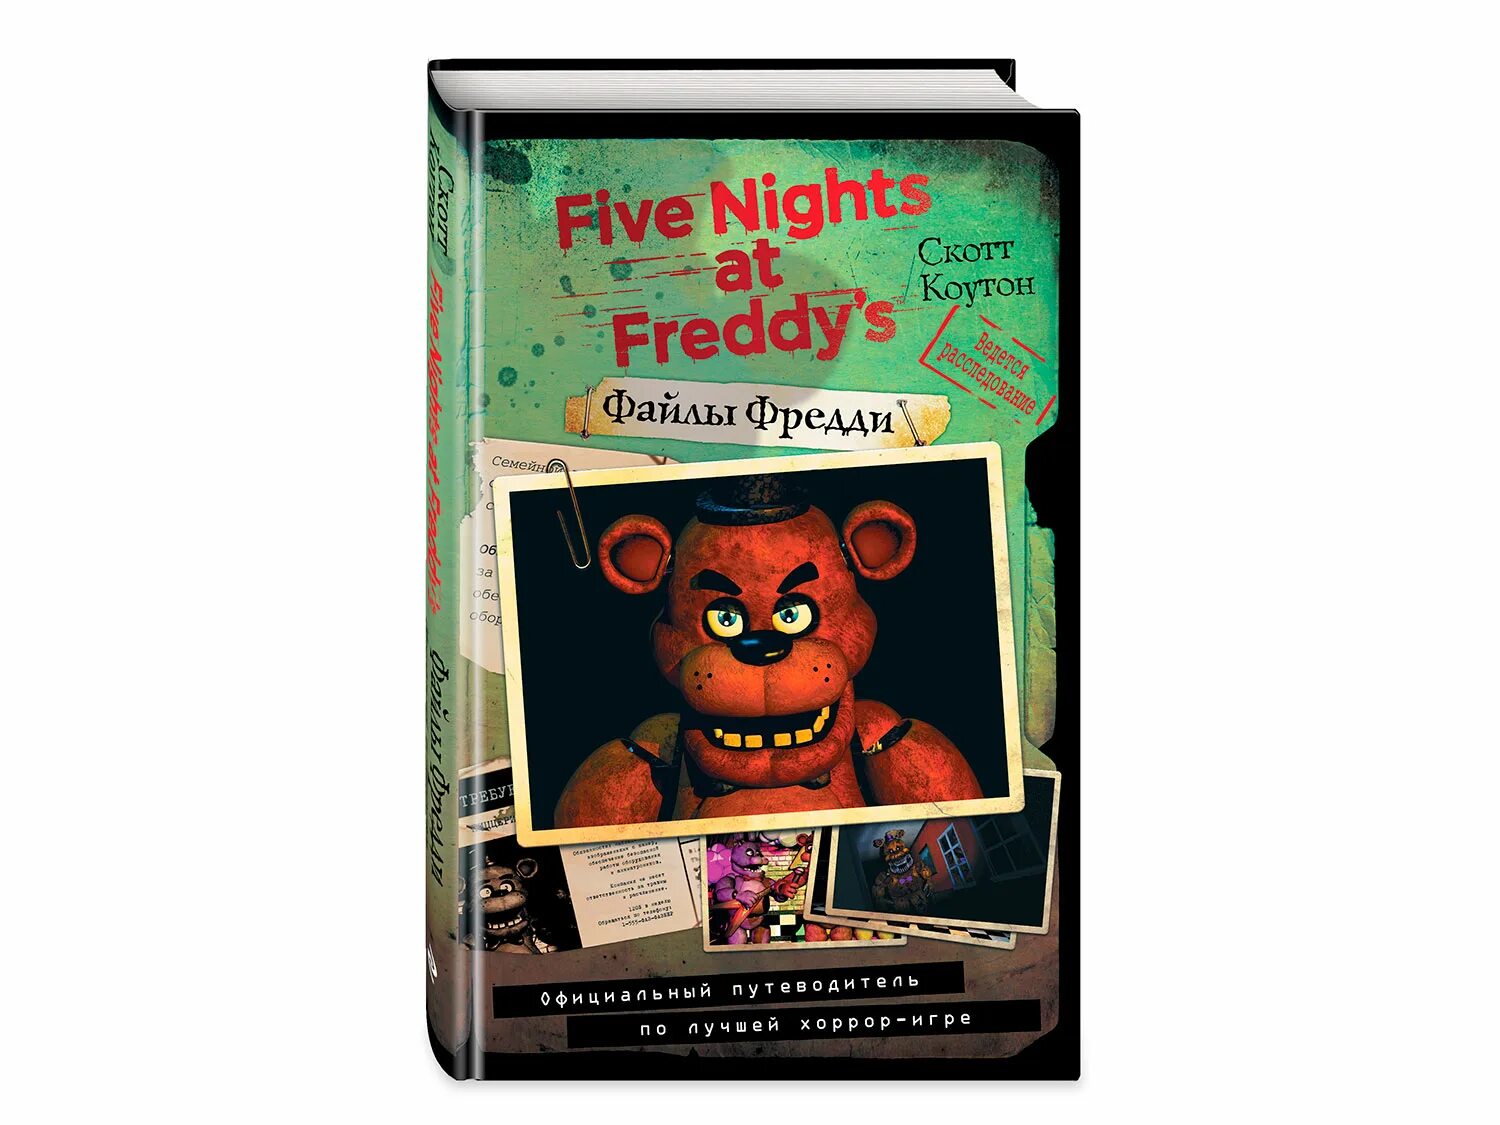 Файлы Фредди. Five Nights at Freddy's файлы Фредди. Книга Фредди. Книга Five Nights at Freddy's файлы Фредди. Скотт коутон книги